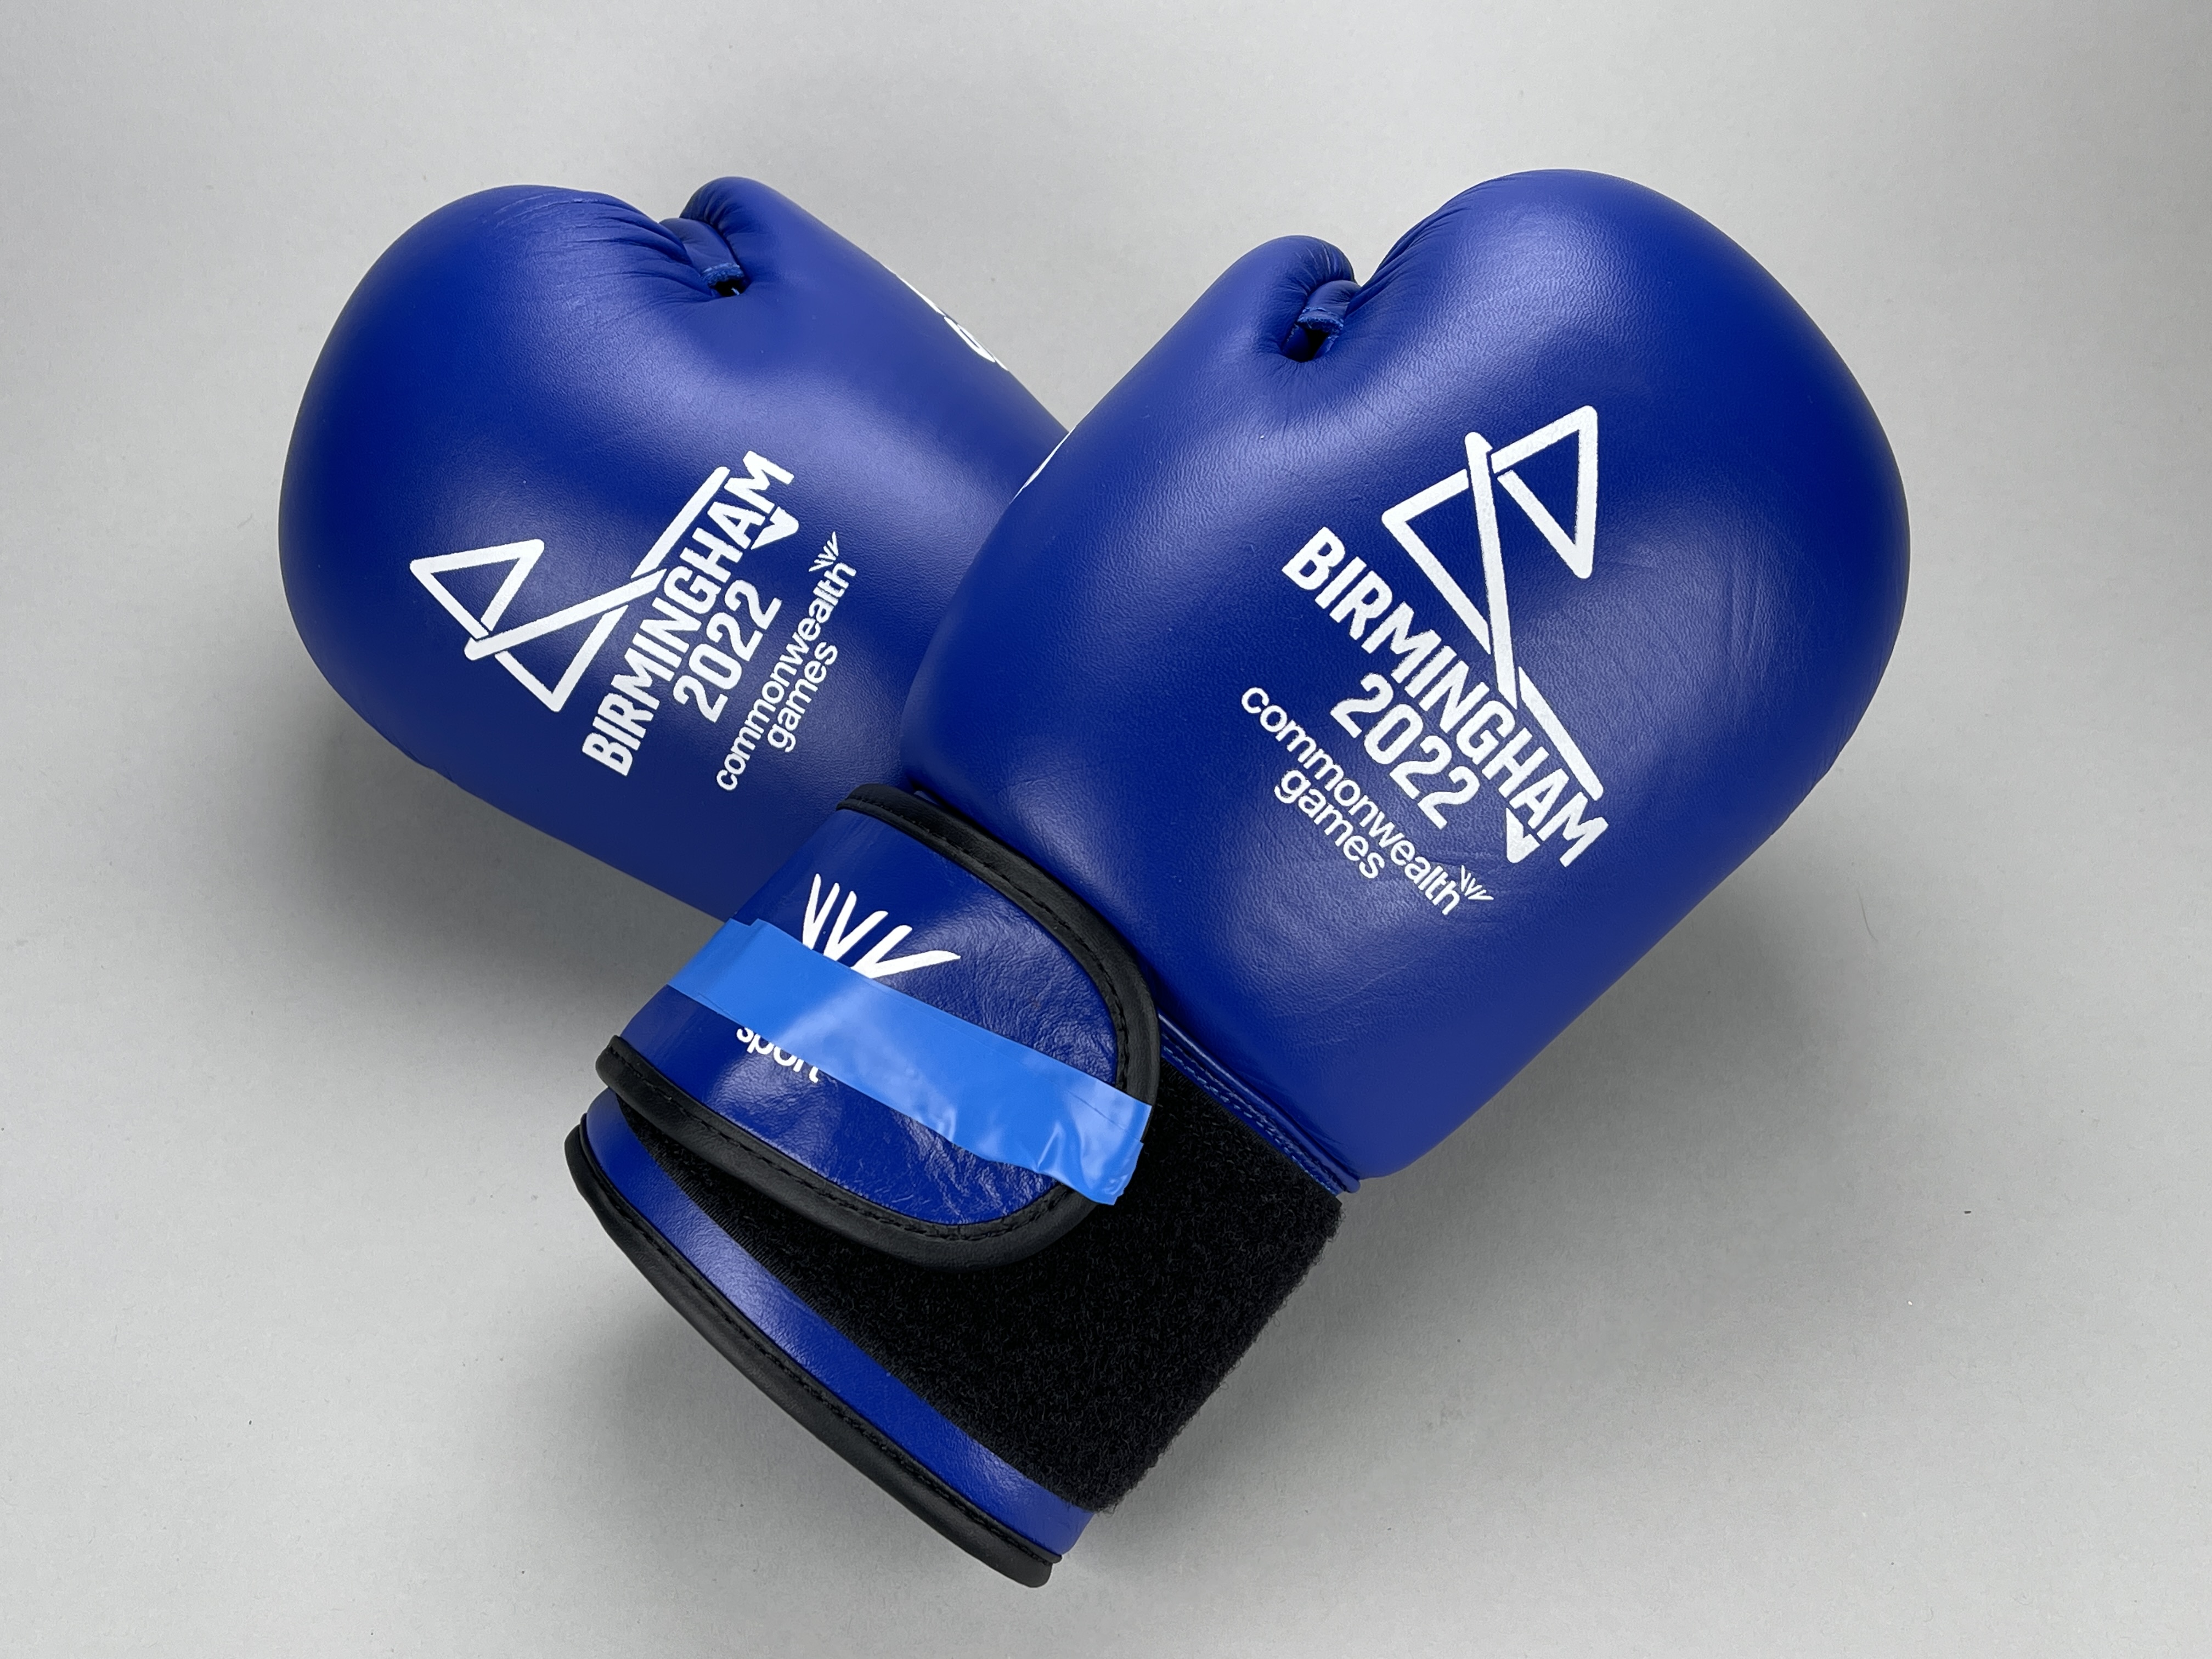 B2022 Men's Light Middleweight Semi-Final Boxing Gloves - Garan Croft